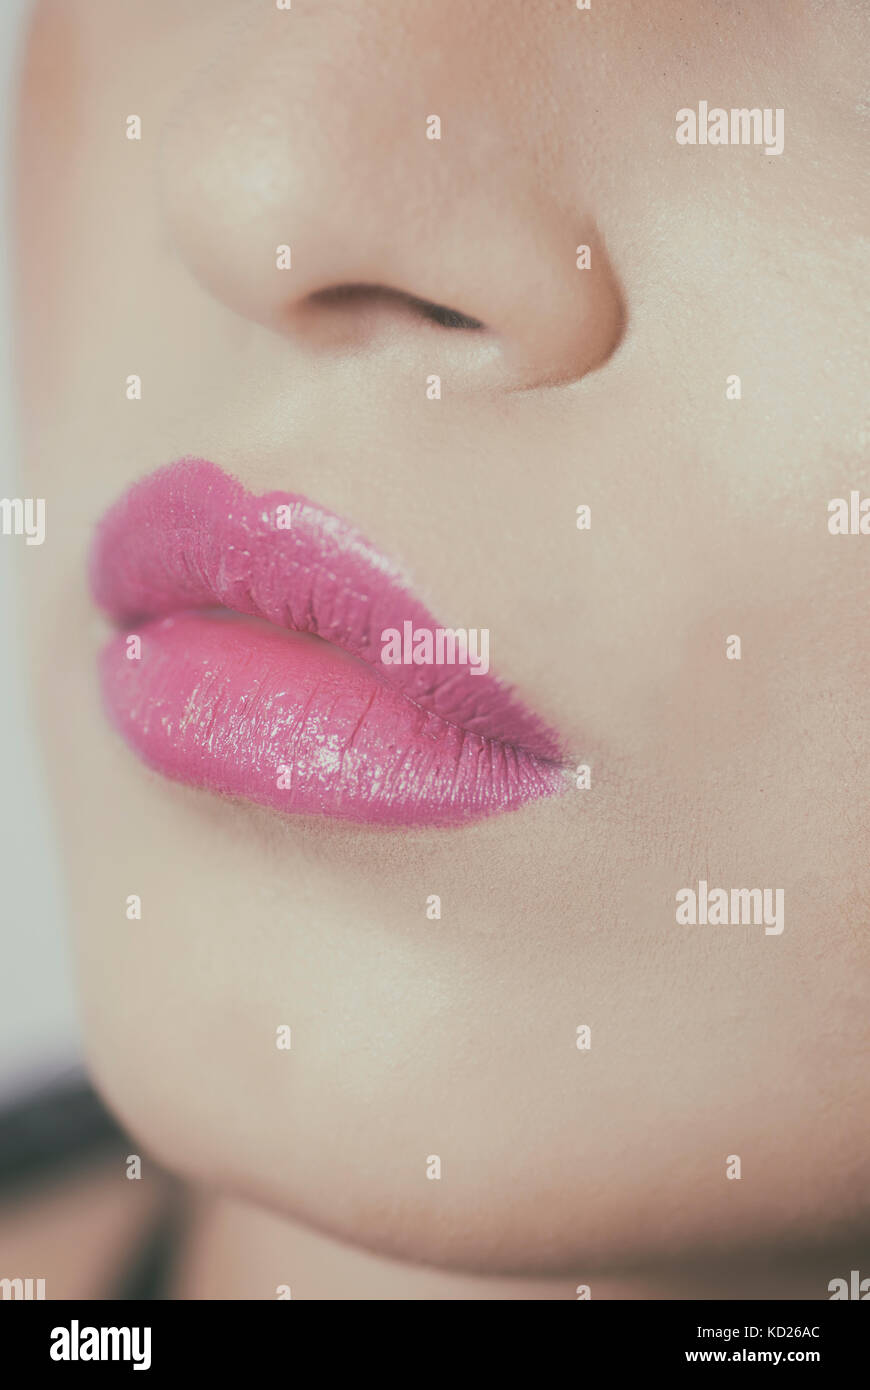 Close up of a woman's lips wearing lipstick Stock Photo